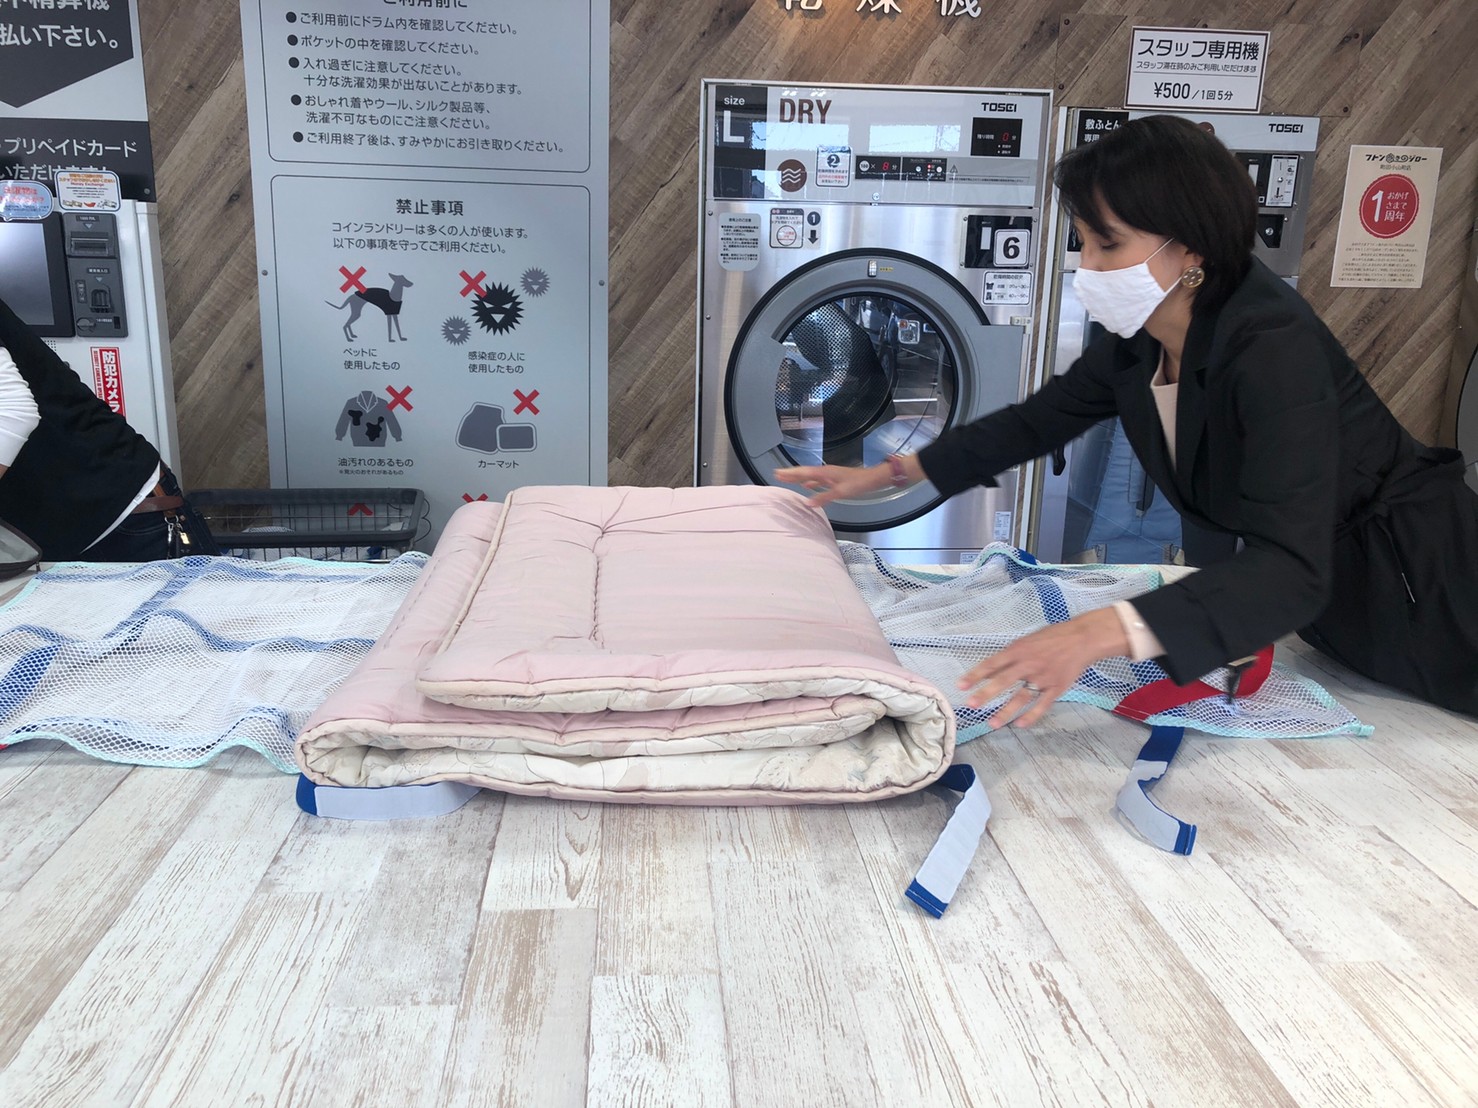 敷布団の洗濯 乾燥が1日で しかも安い フトン巻きのジロー とは 小倉弘子のジローシリーズ第3弾